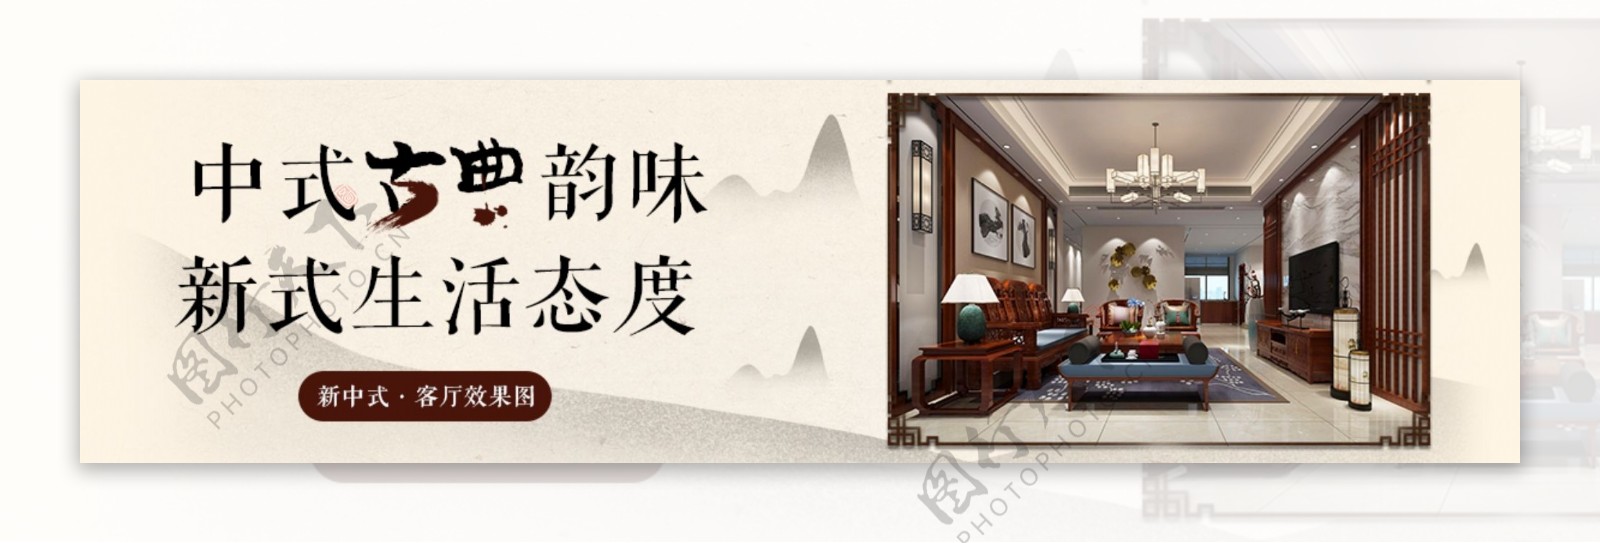 中国风装修装饰海报设计banner